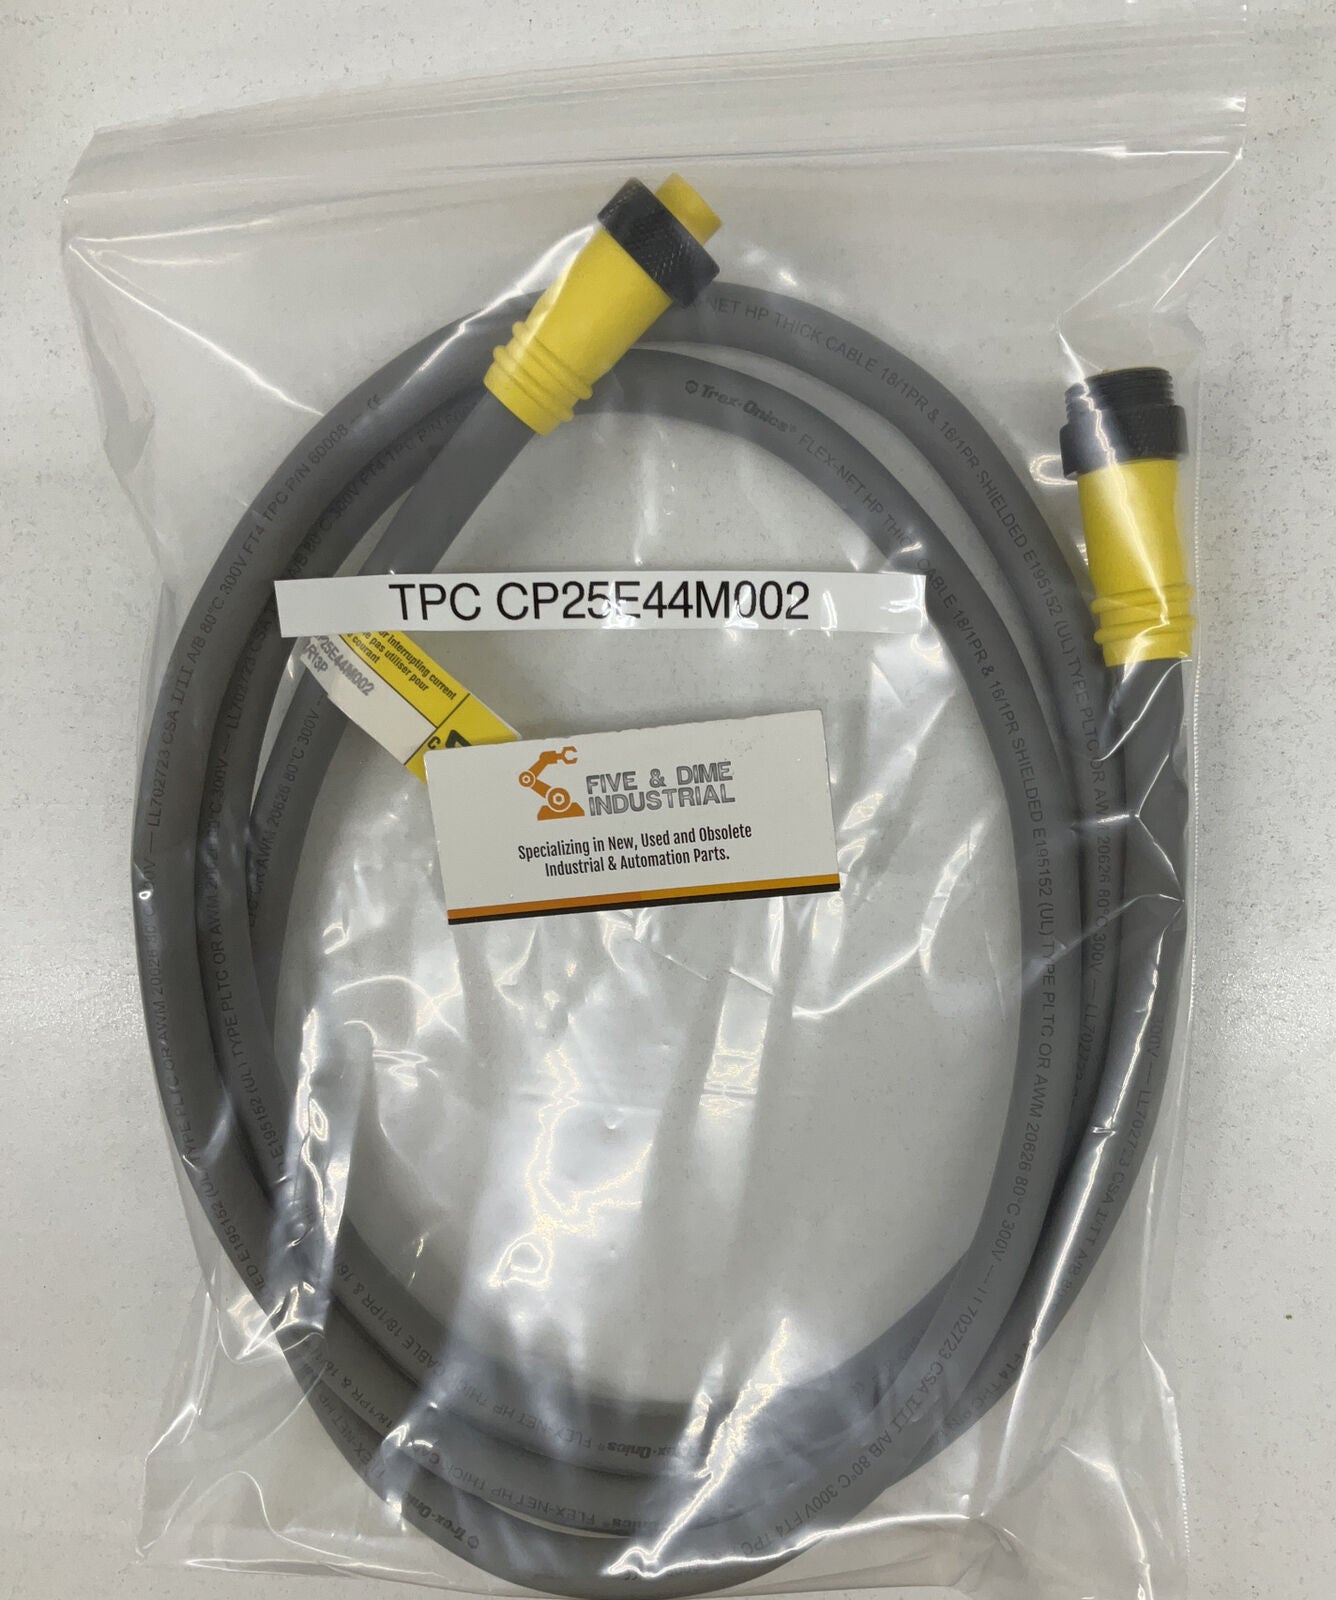 TPC CP25E44M002 Super-Trex QUICK CONNECT CABLE 2M   (CBL123)